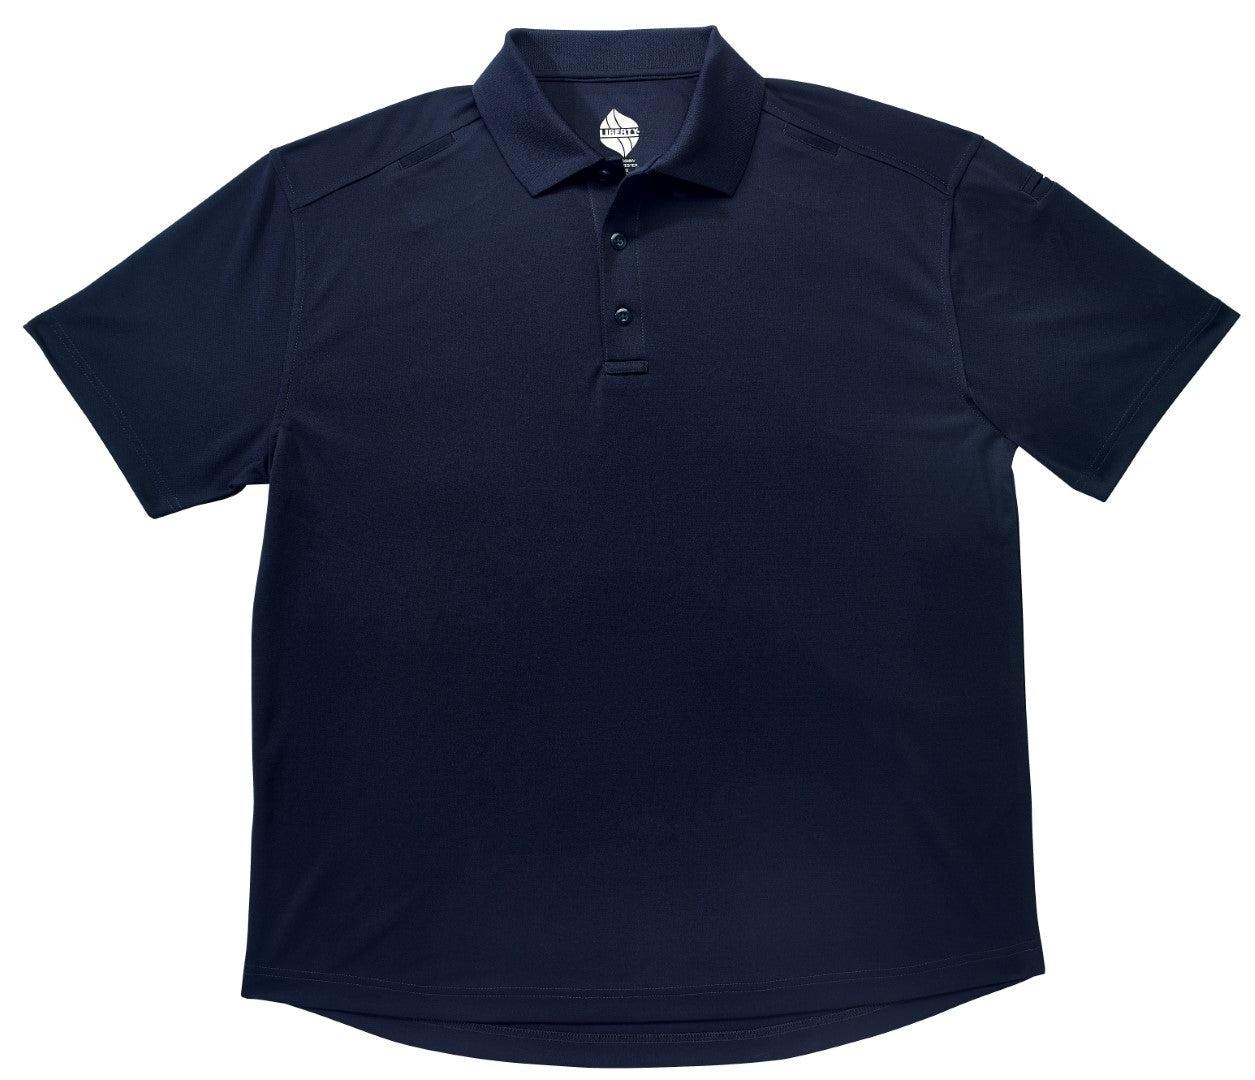 Tactical Knit Polo Shirt 3 Button Placket blue color